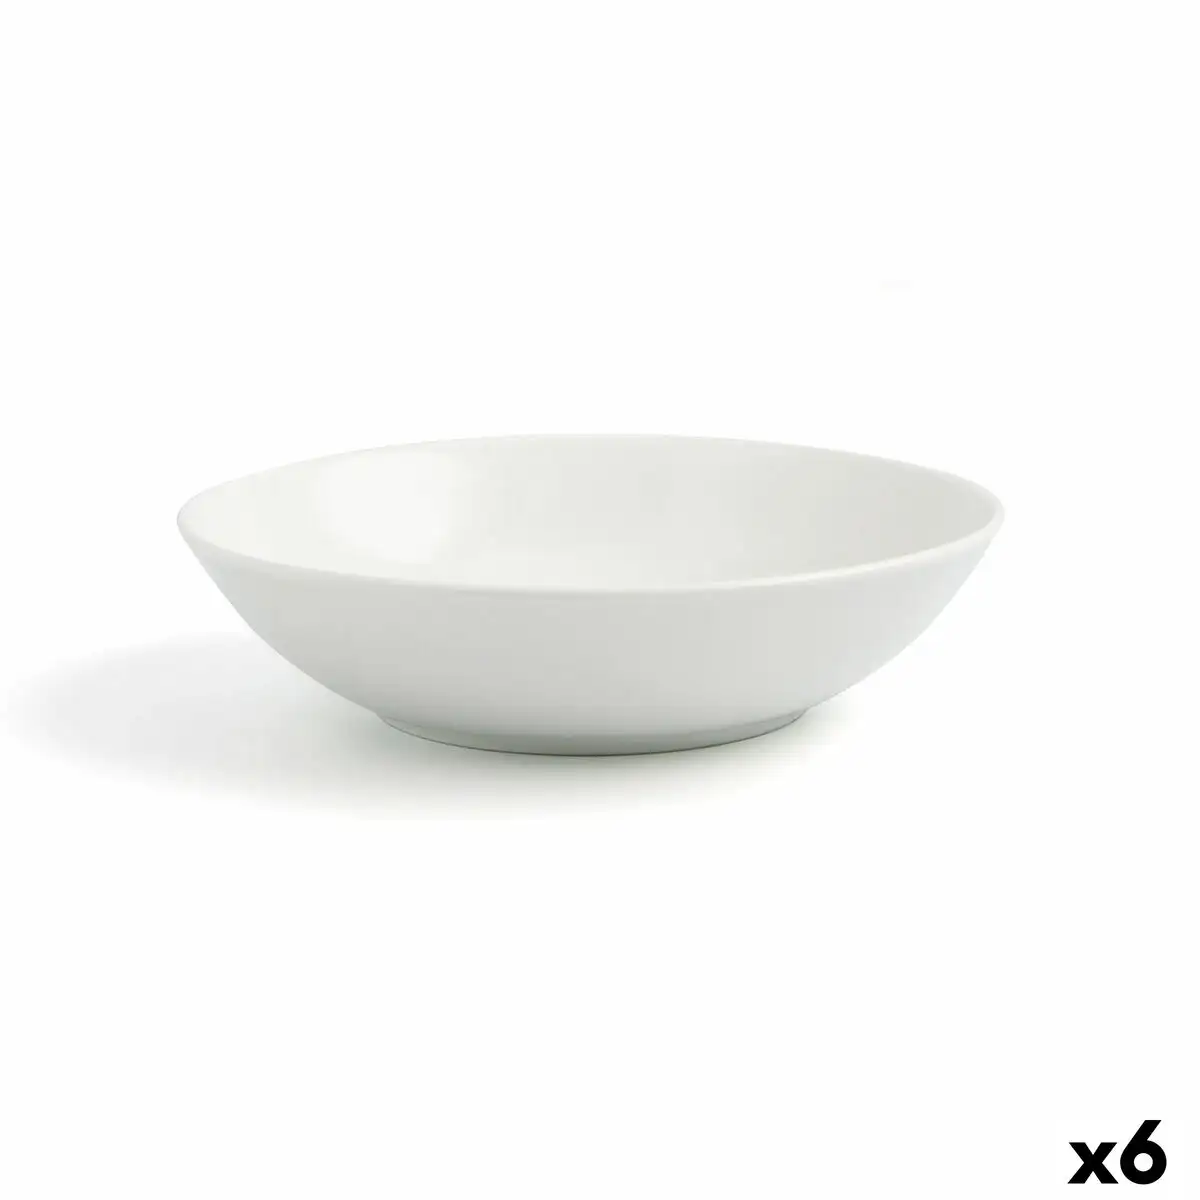 Assiette creuse ariane vital coupe blanc ceramique o 21 cm 6 unites _4856. DIAYTAR SENEGAL - L'Art de Vivre avec Authenticité. Explorez notre gamme de produits artisanaux et découvrez des articles qui apportent une touche unique à votre vie.